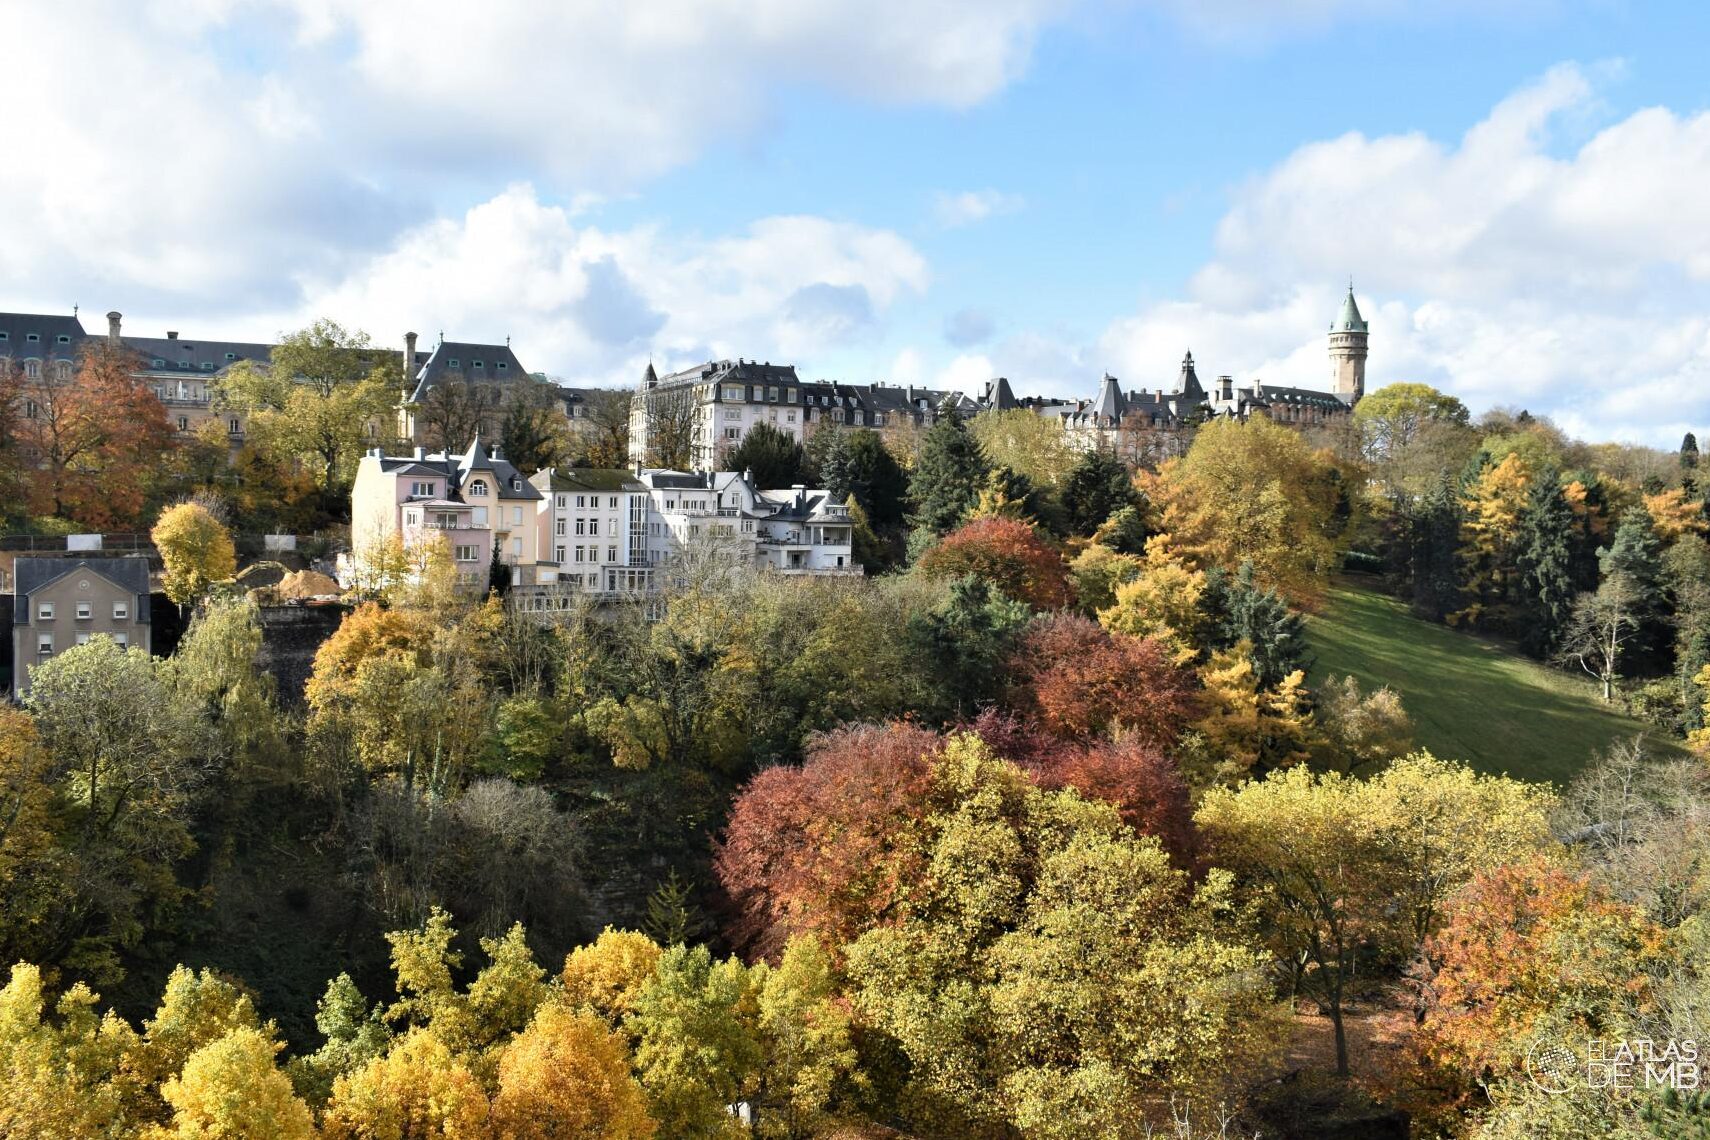 Breve historia de Luxemburgo: desde sus orígenes hasta la actualidad